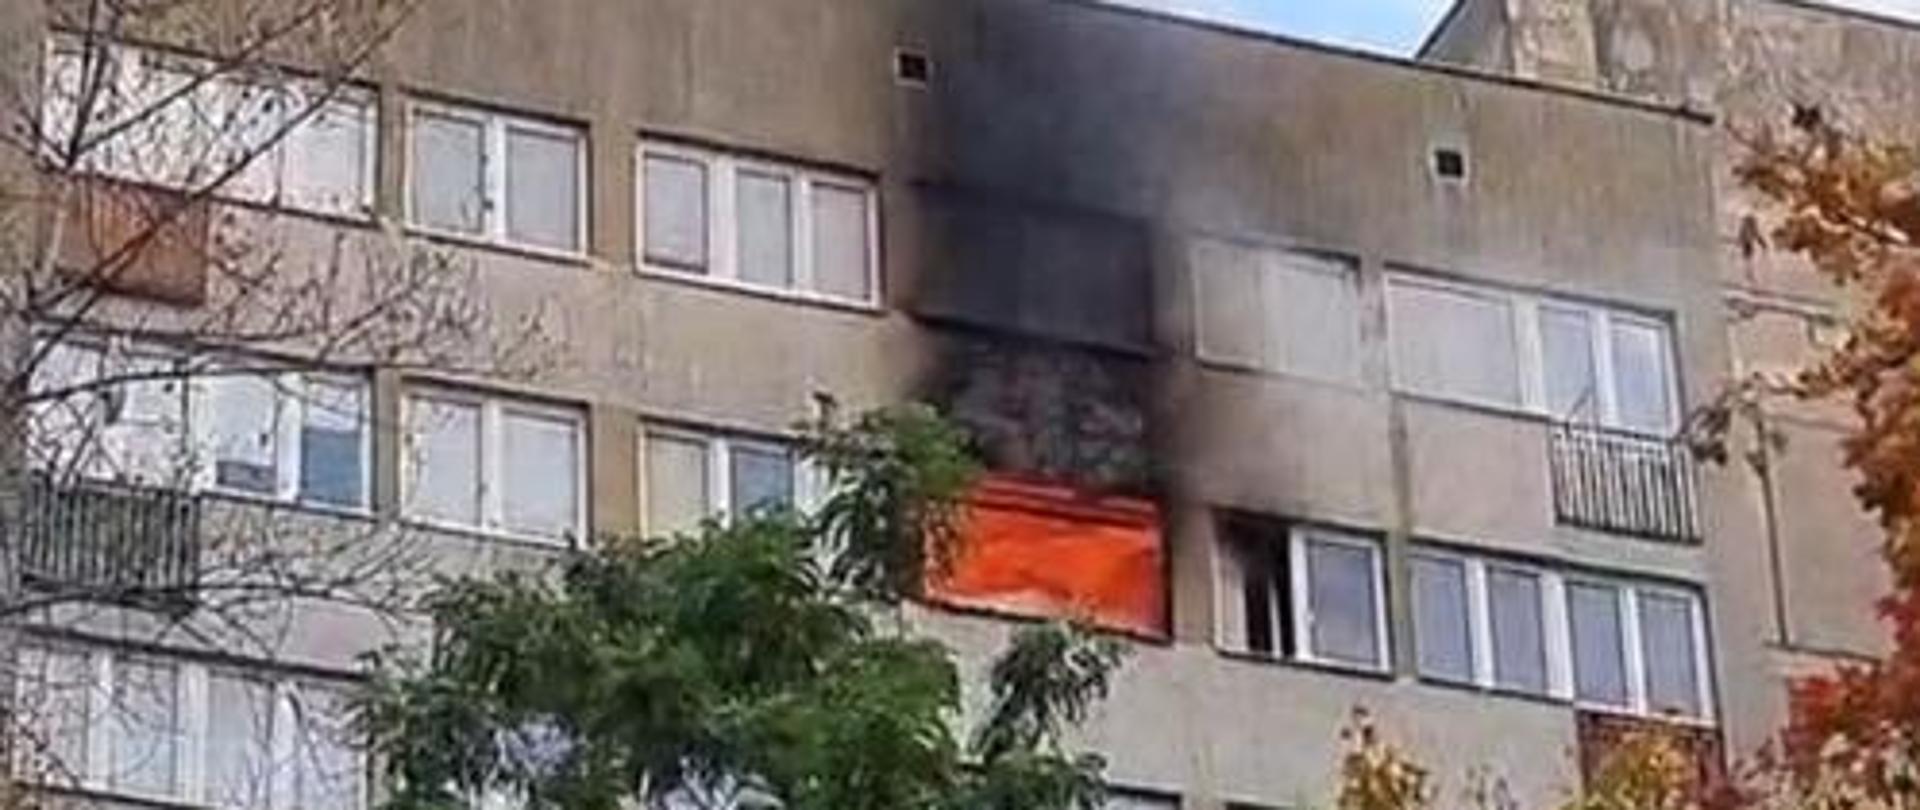 Ogień w oknie mieszkania